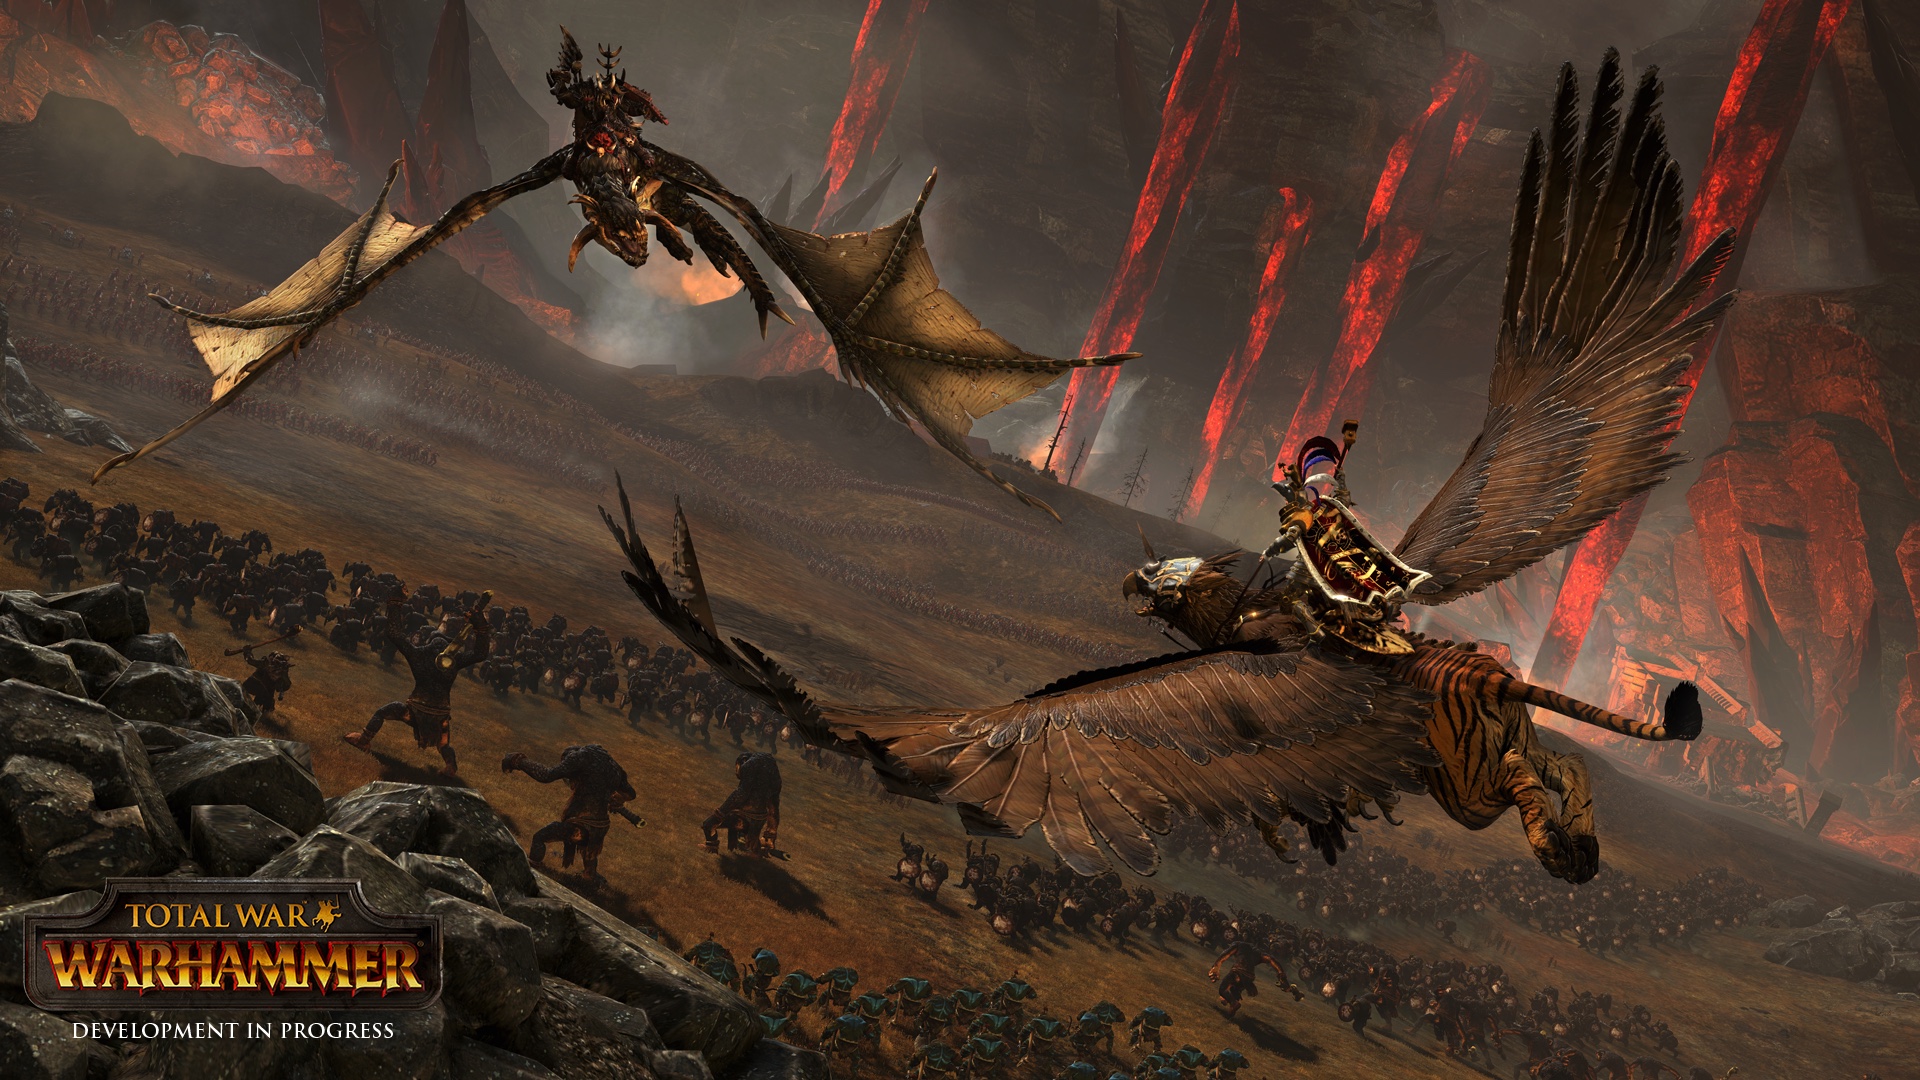 IM1536: Interview Total War: Warhammer